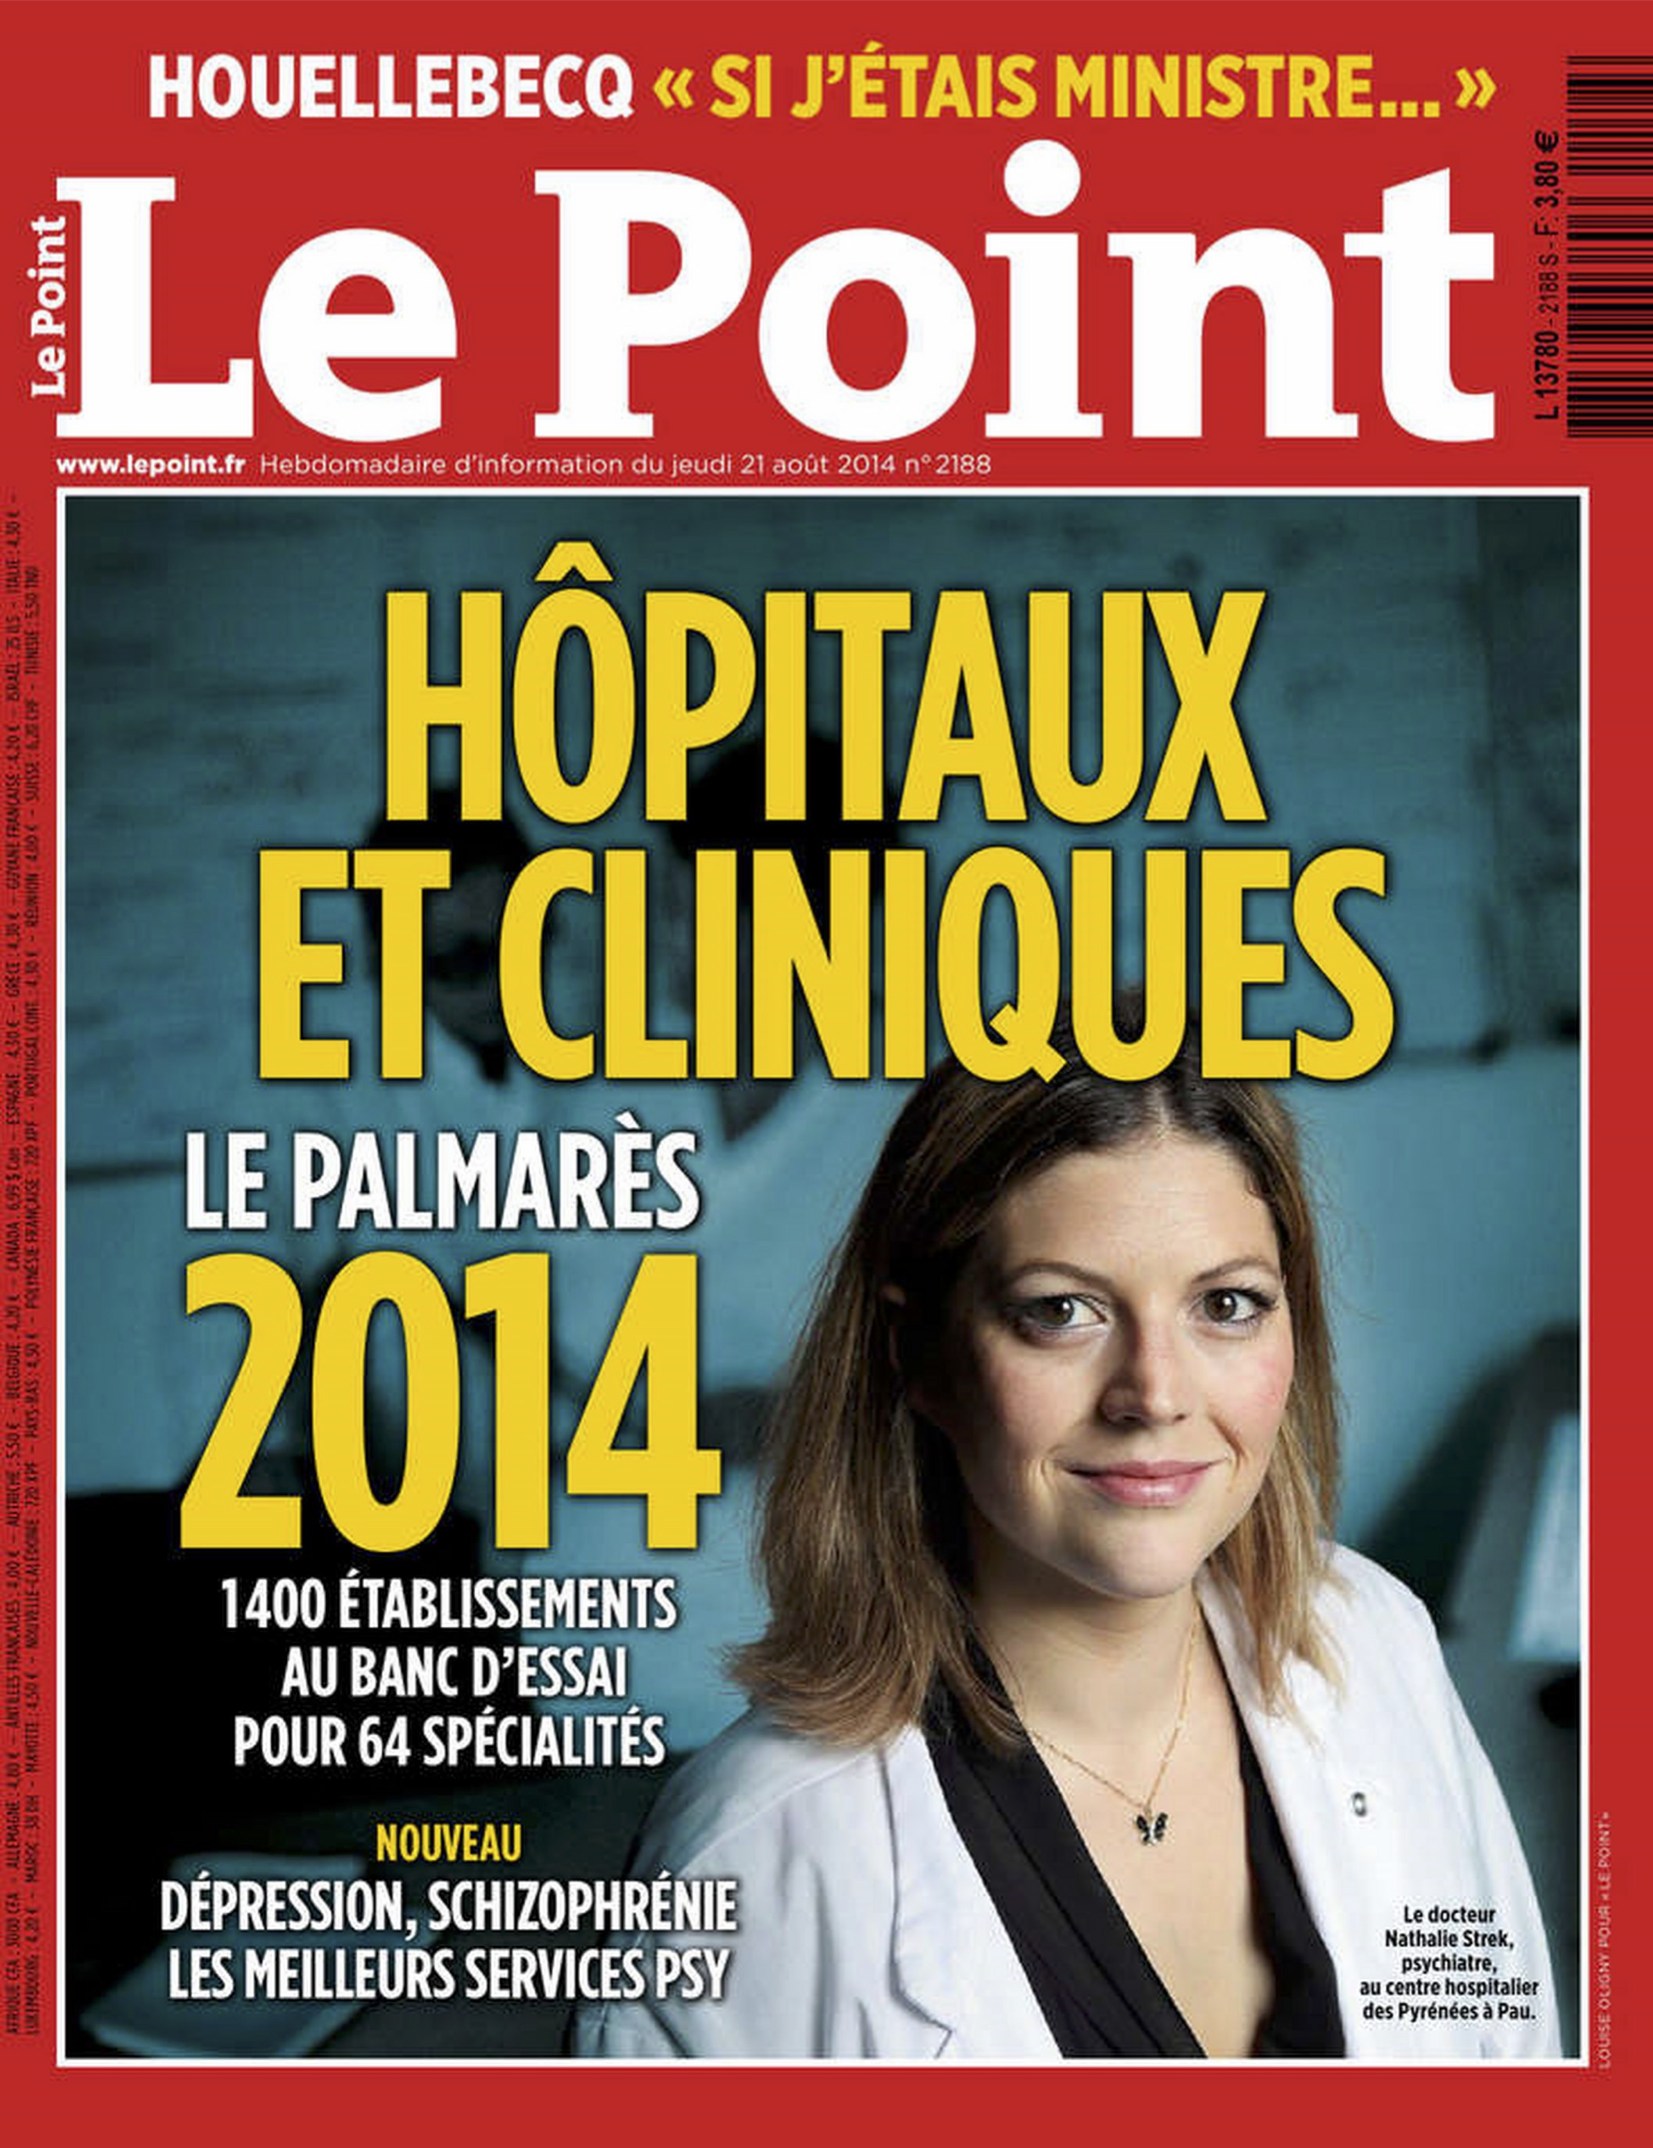 Le Point - Palmarès des Hôpitaux 2014 : Clinique Geoffroy Saint Hilaire numéro à Paris et numéro 7 en France pour la Chirurgie du Pied!